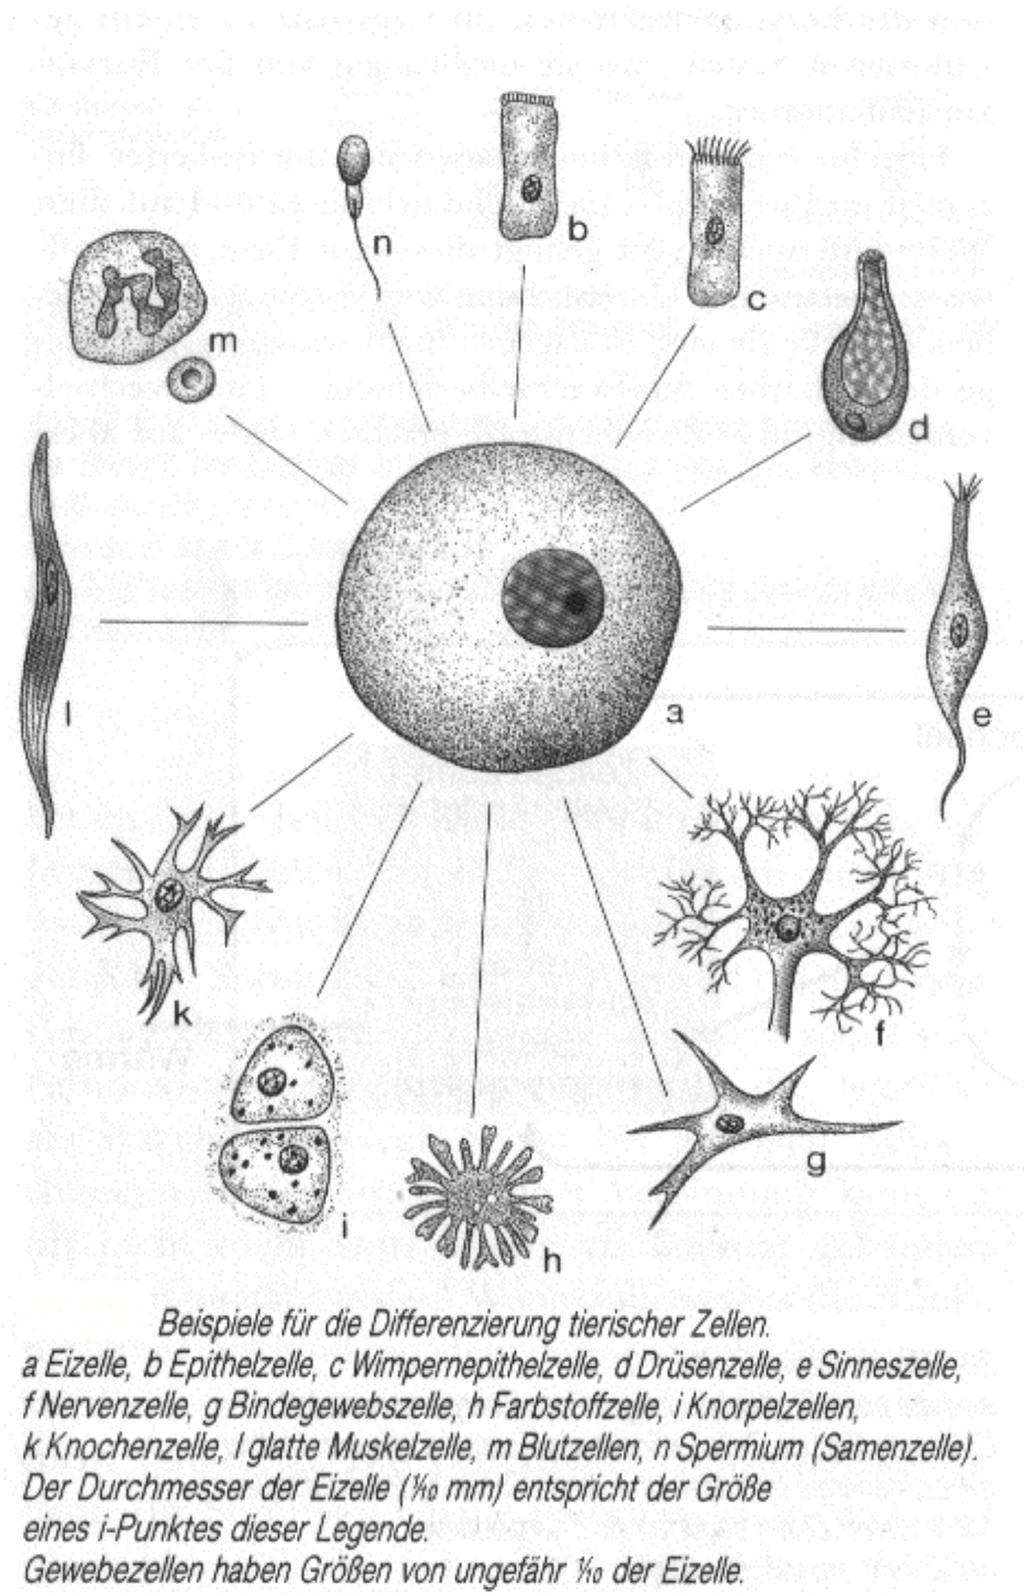 Der erste Schritt der Entwicklung mehrzelliger Organismen war die Spezialisierung der Zellen, die